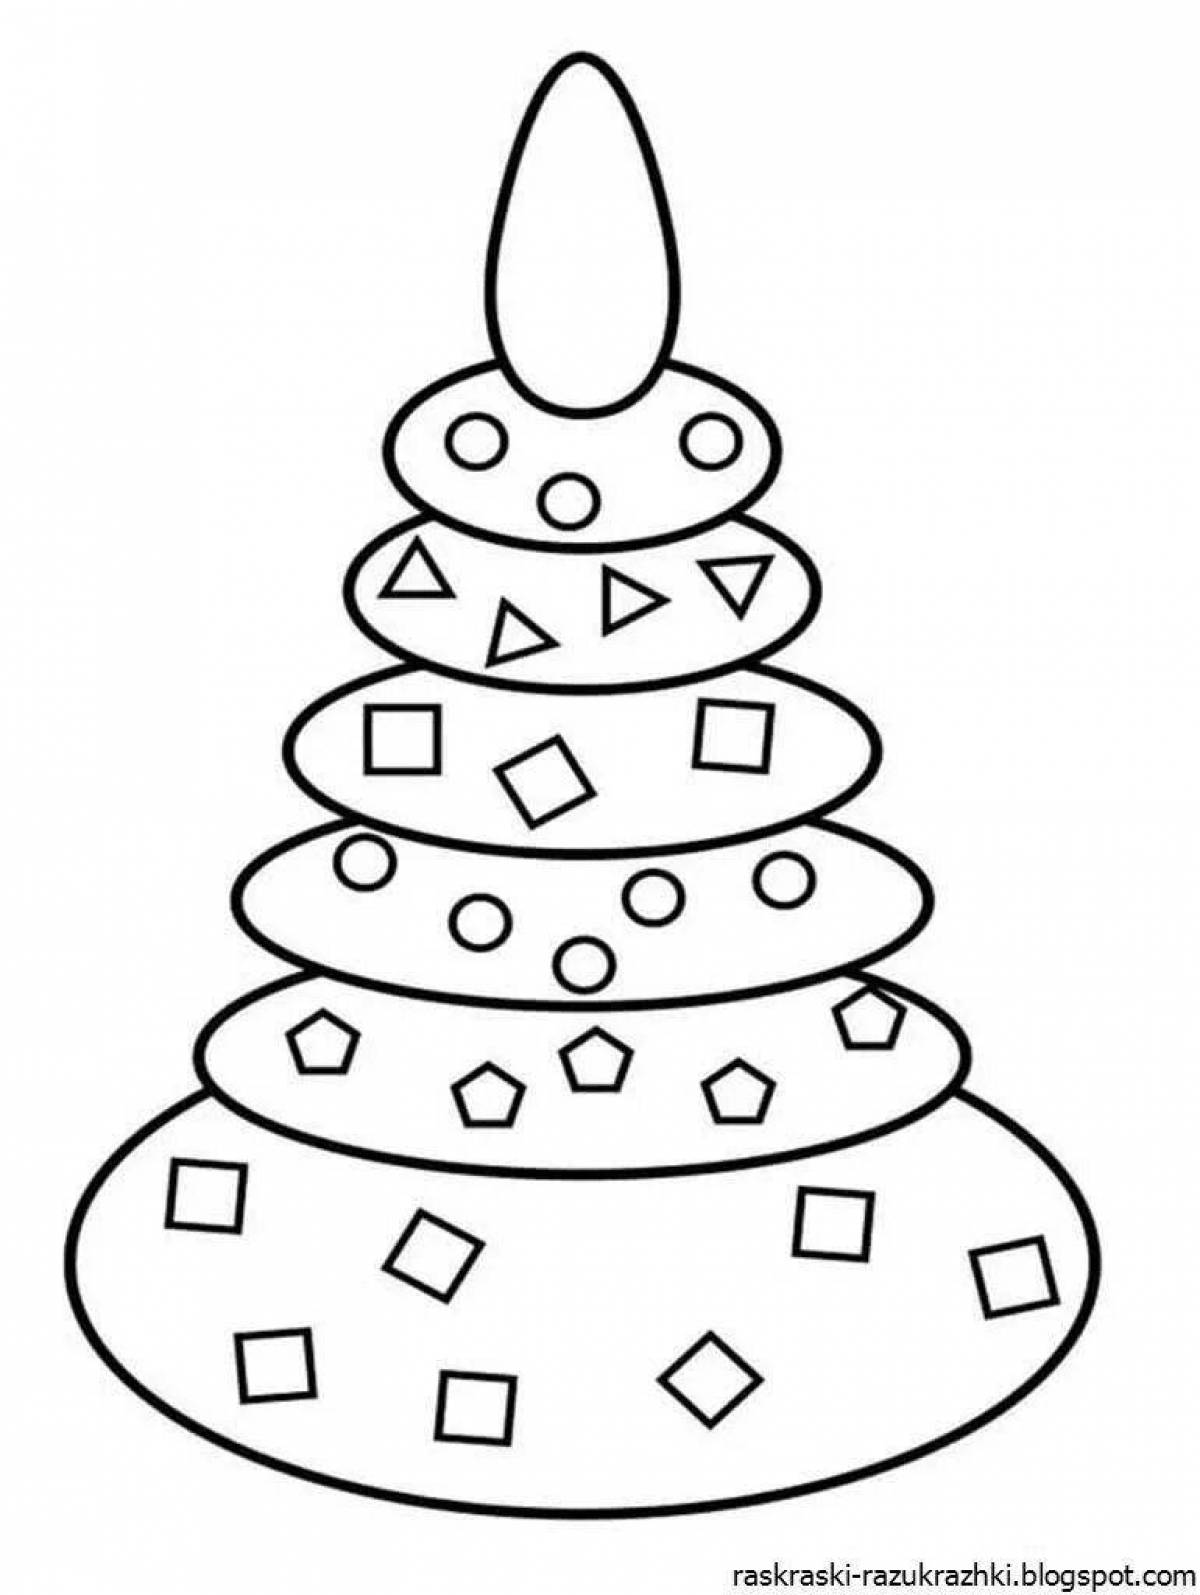 Веселая пирамидка-раскраска для детей 4-5 лет